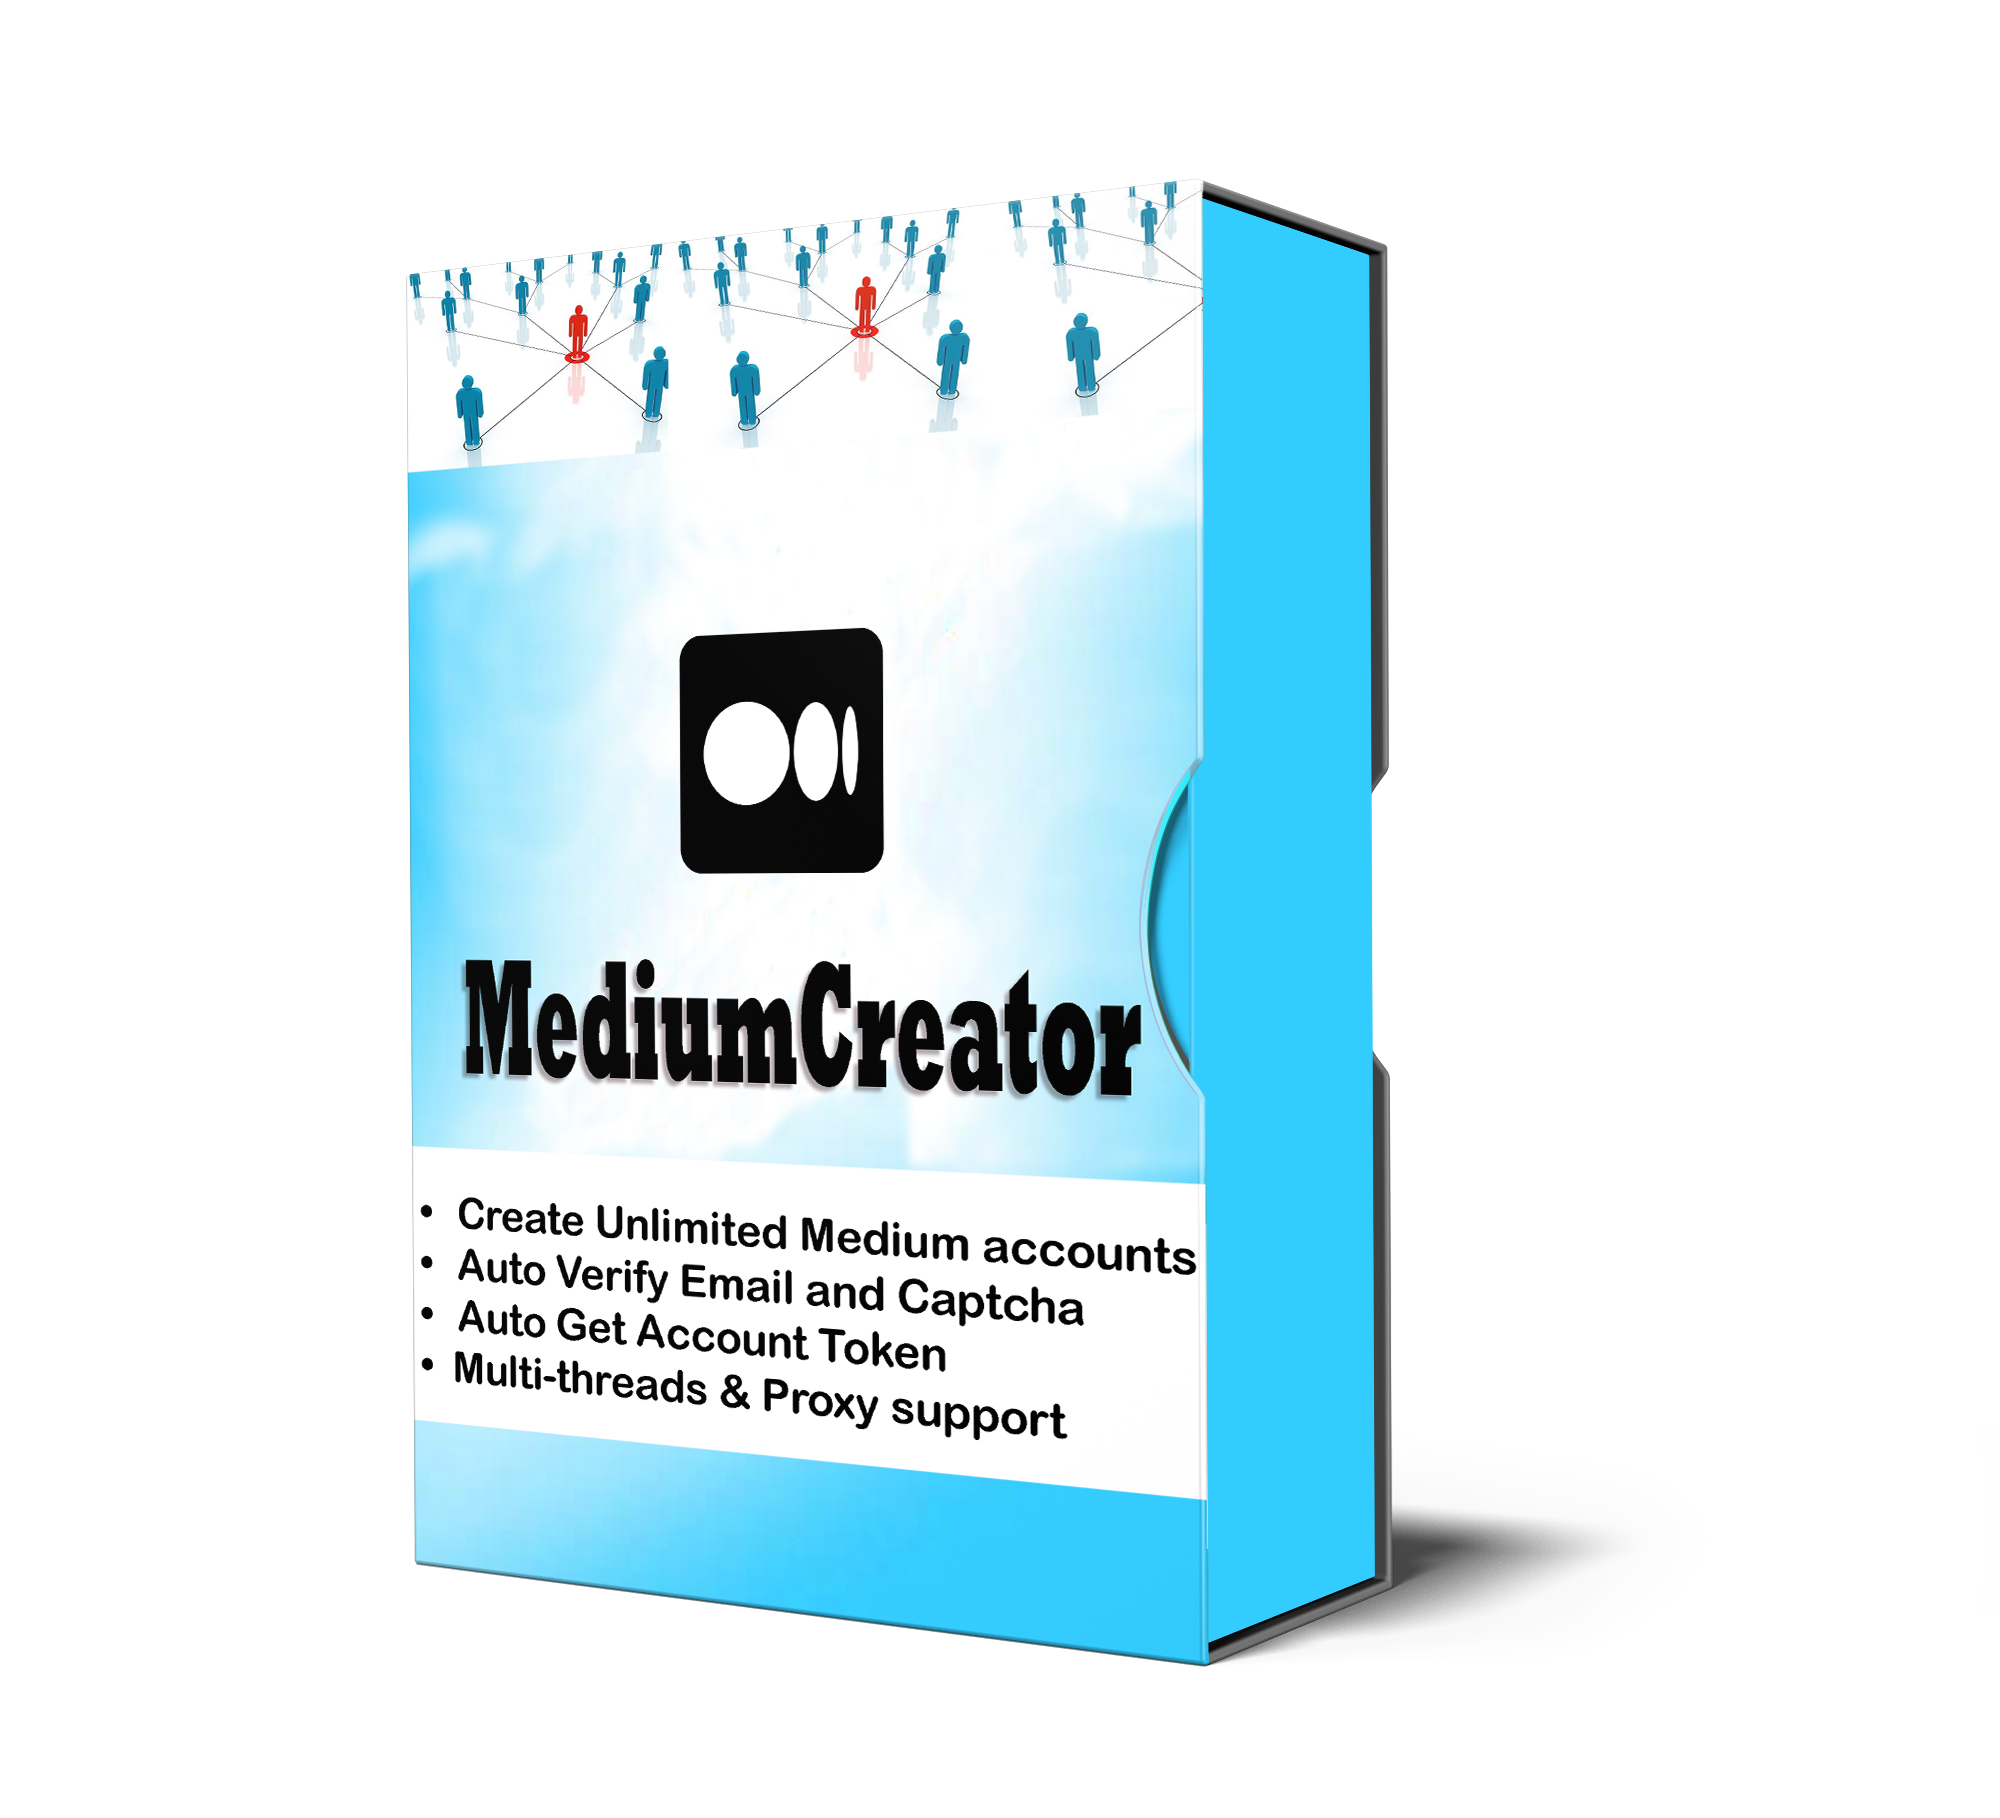 MediumCreator